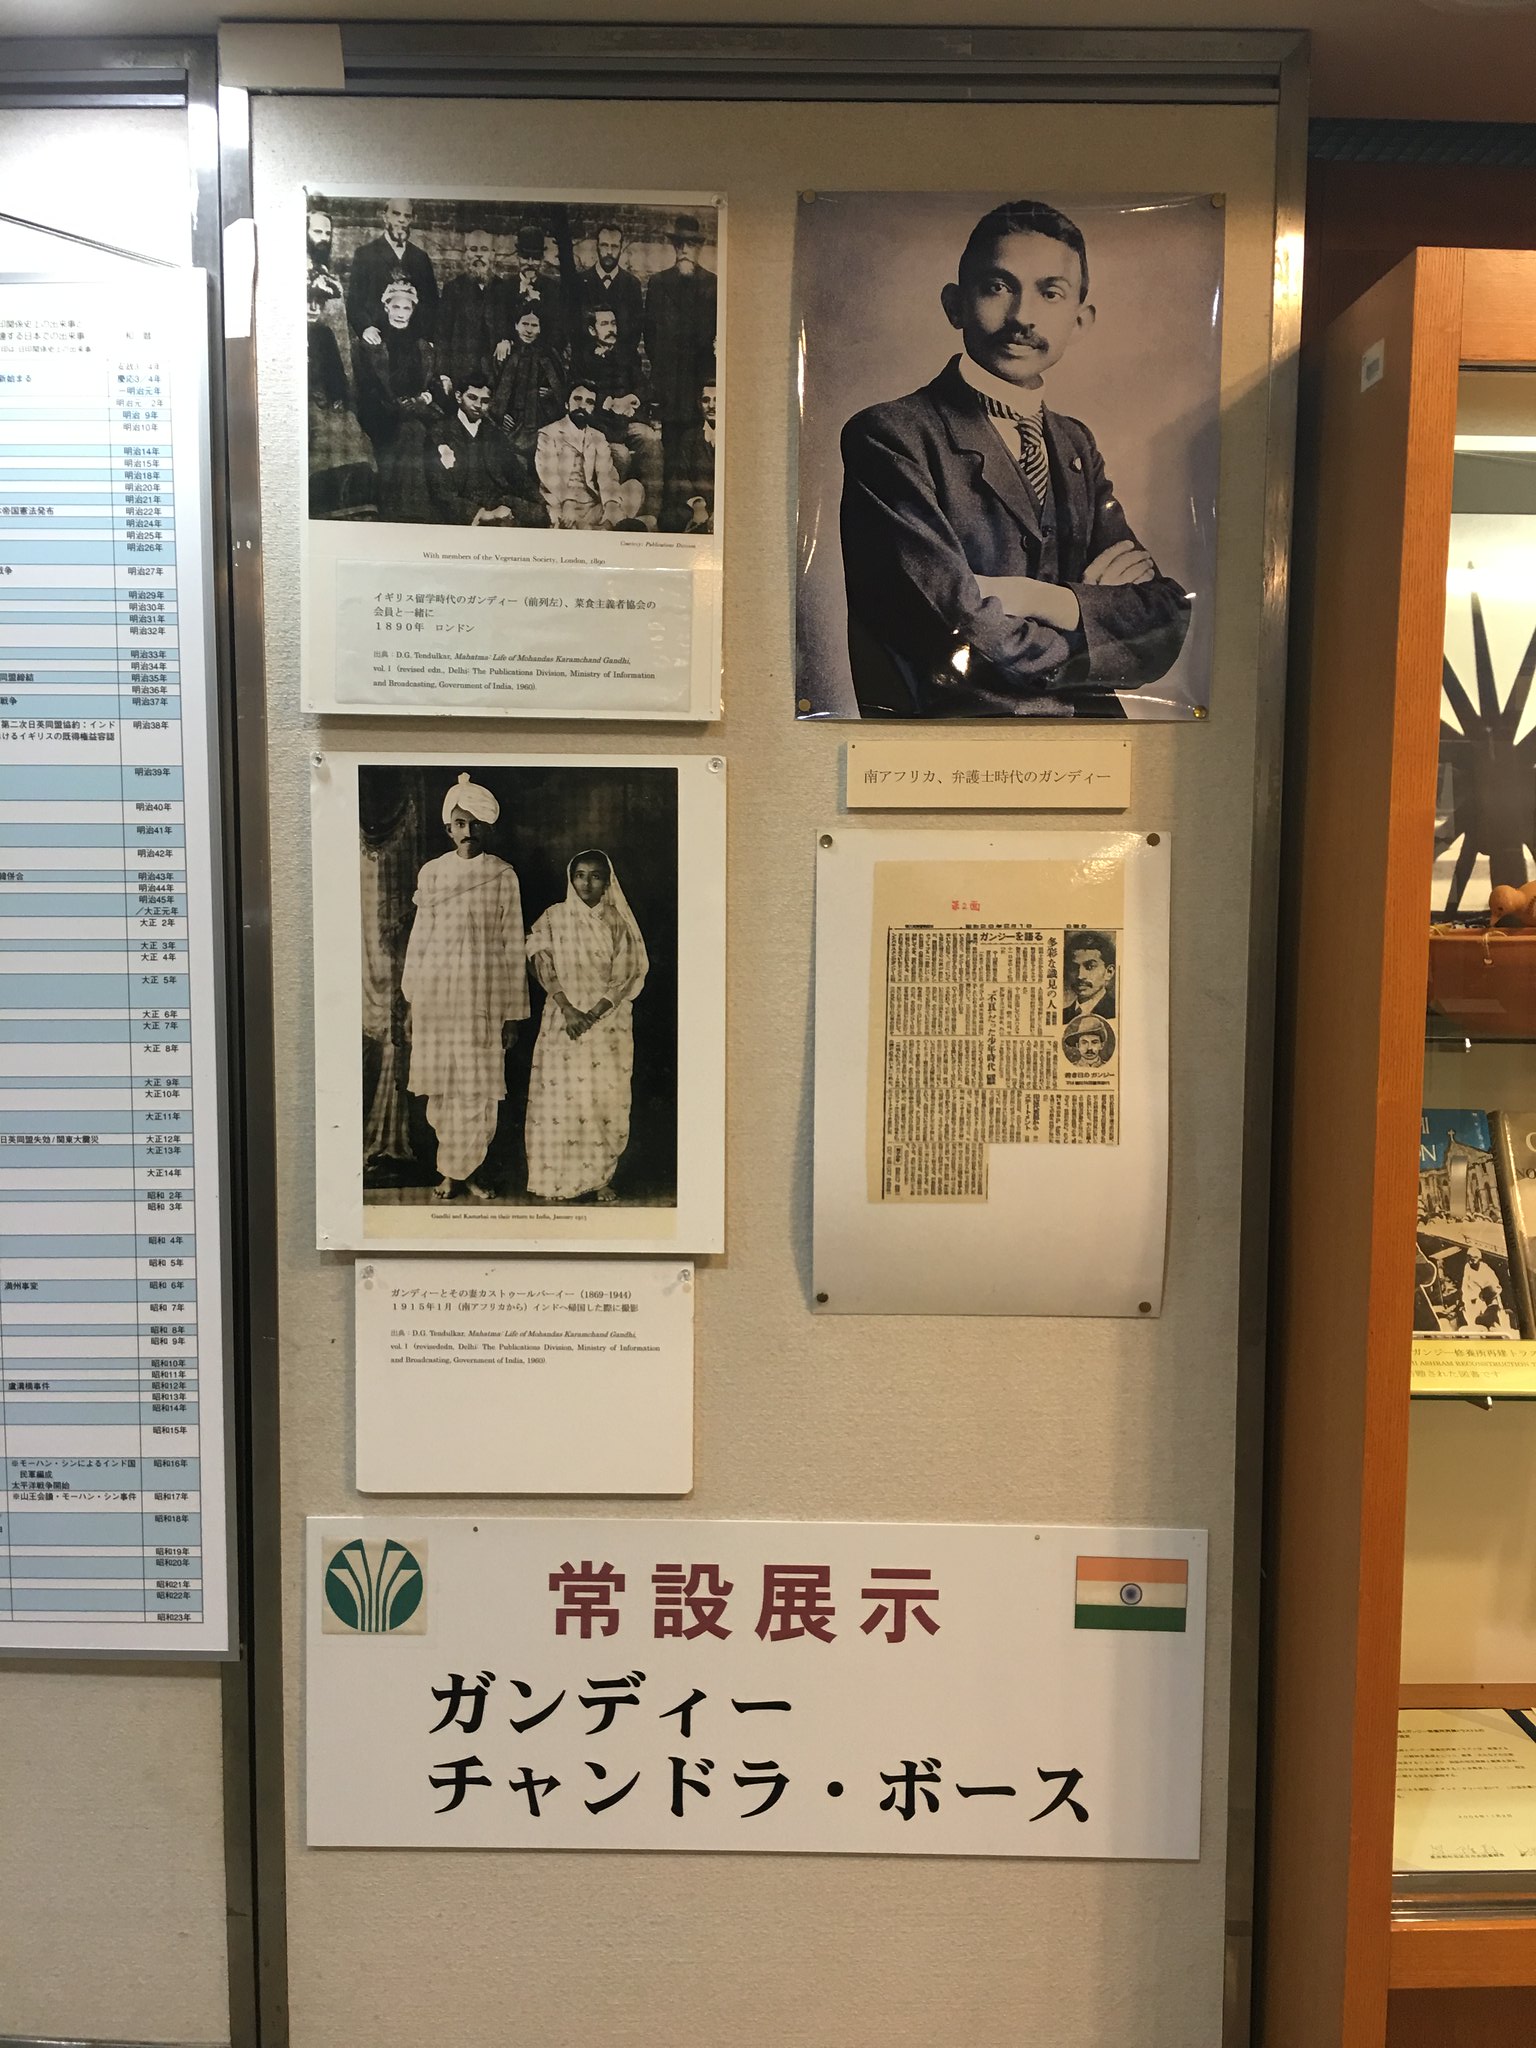 Mahatma Gandhi statue at suginami Ward Library